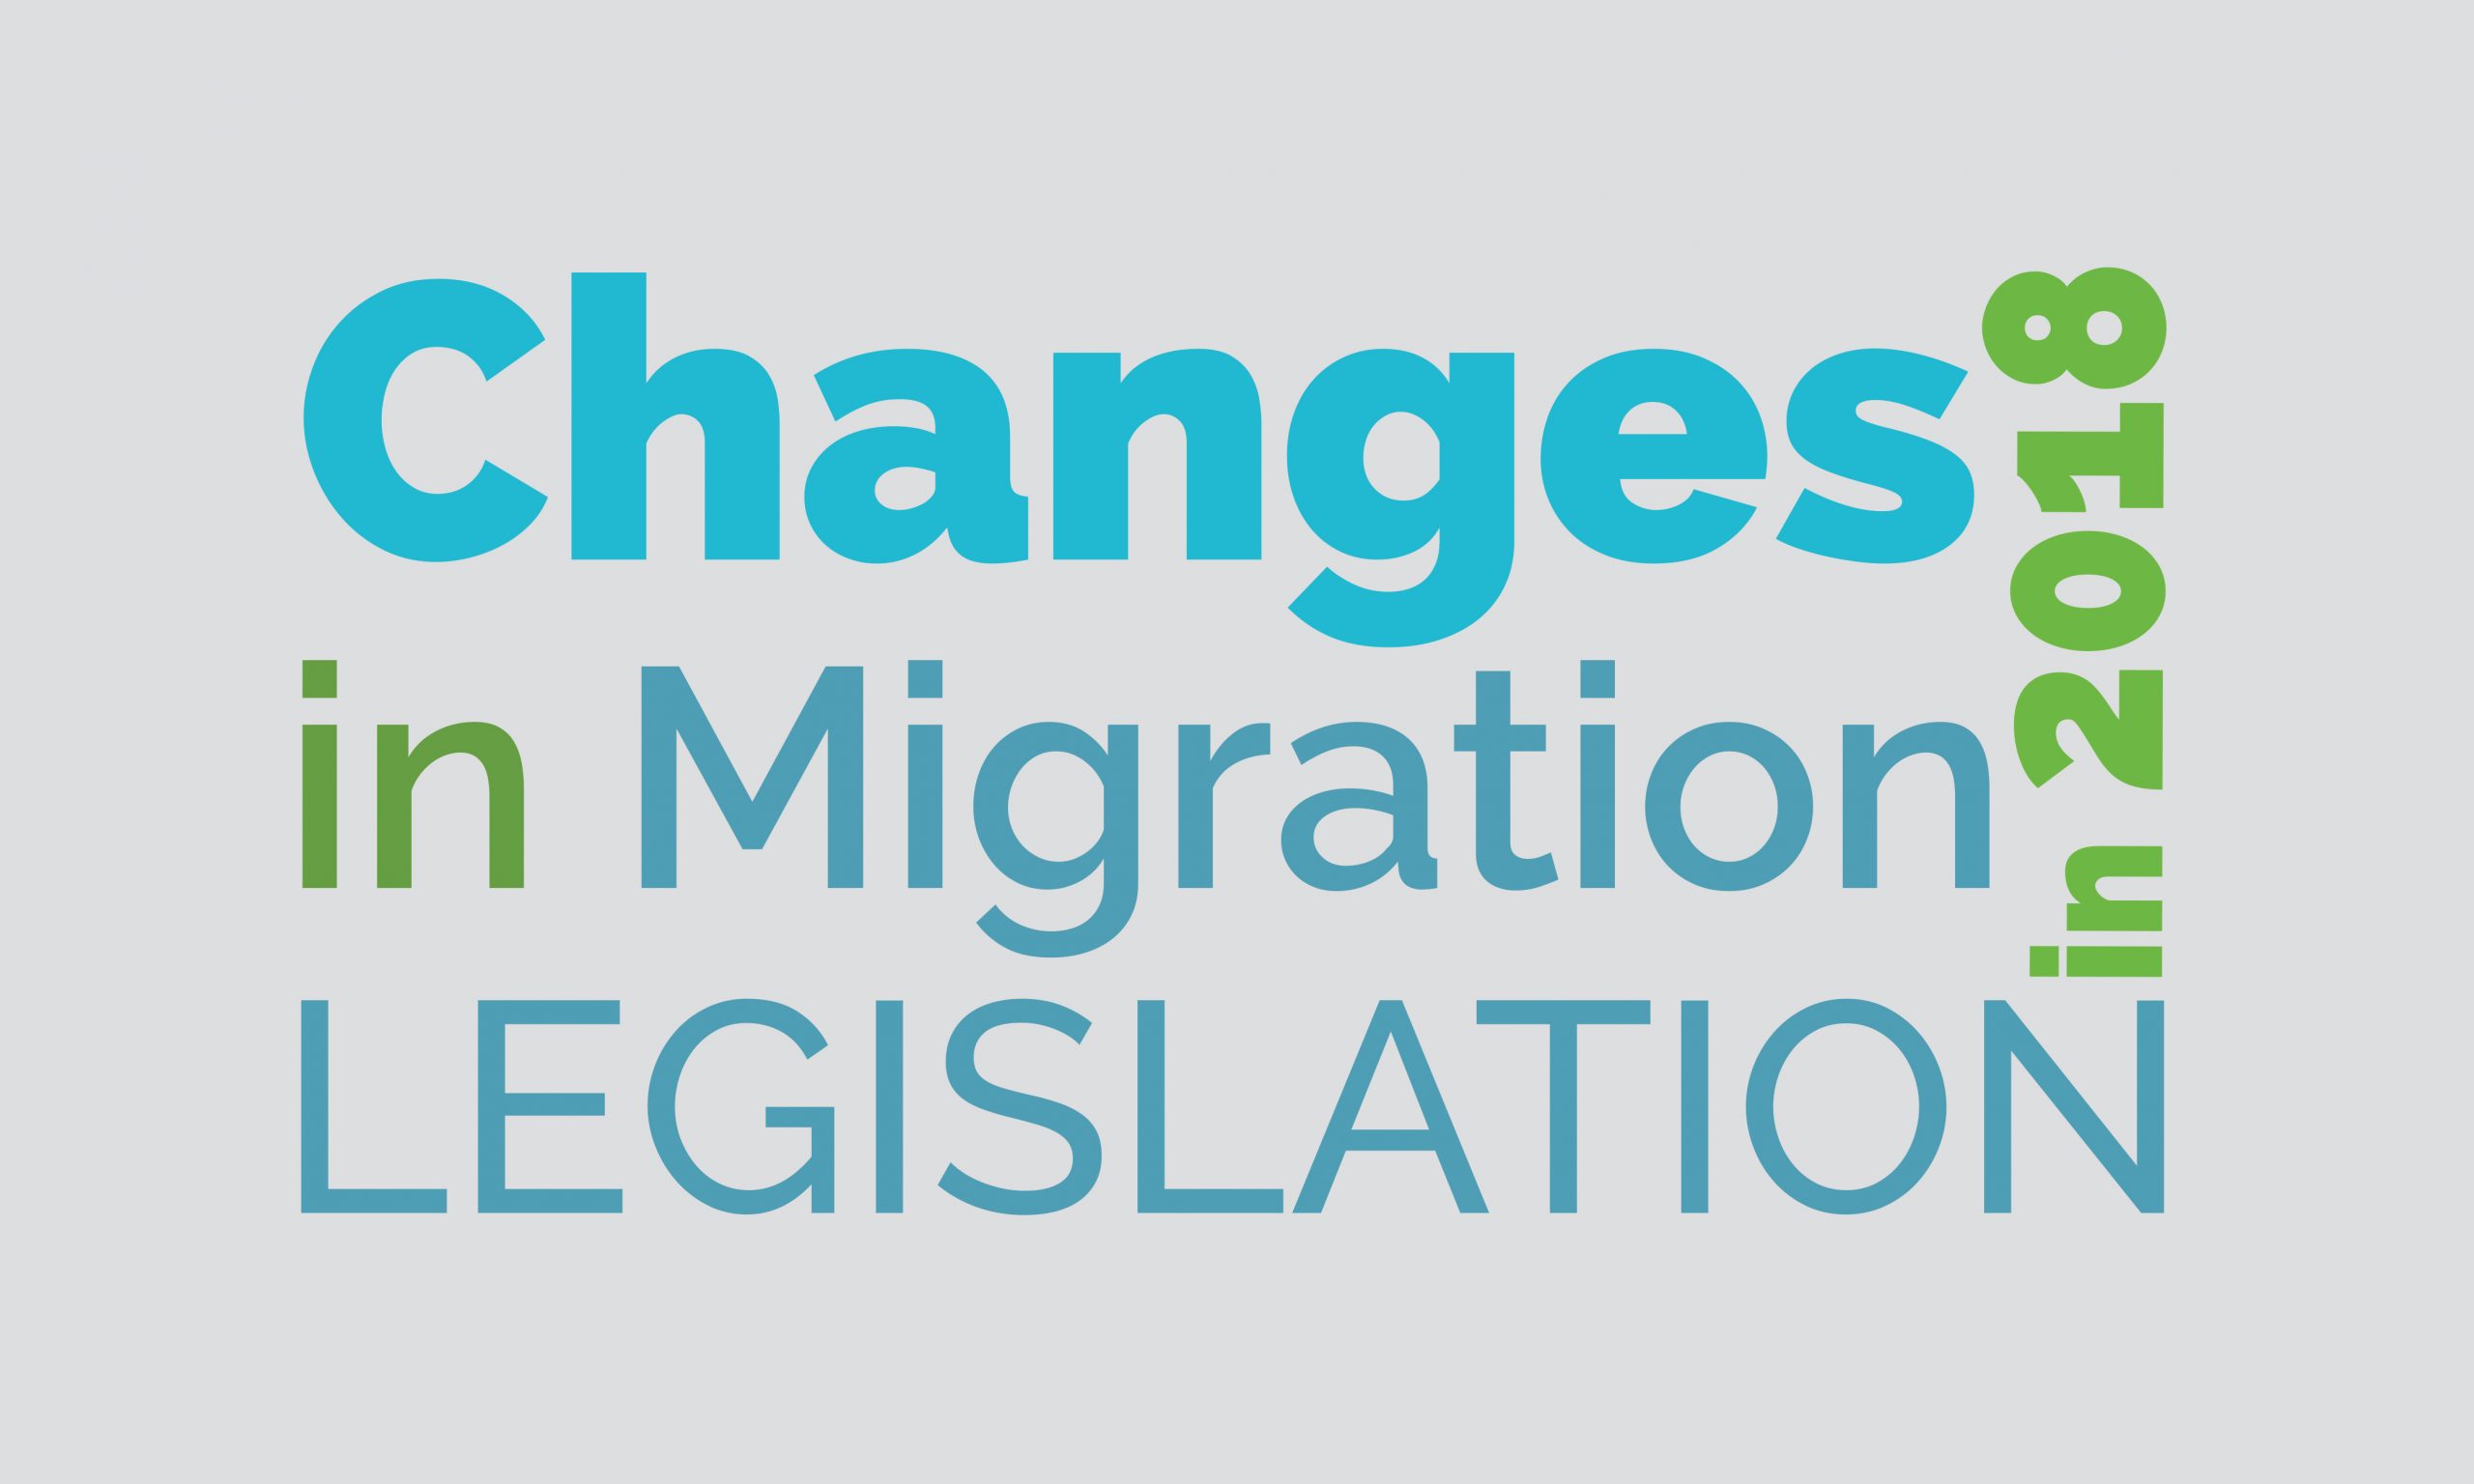 Changes in Migration Legislation in 2018